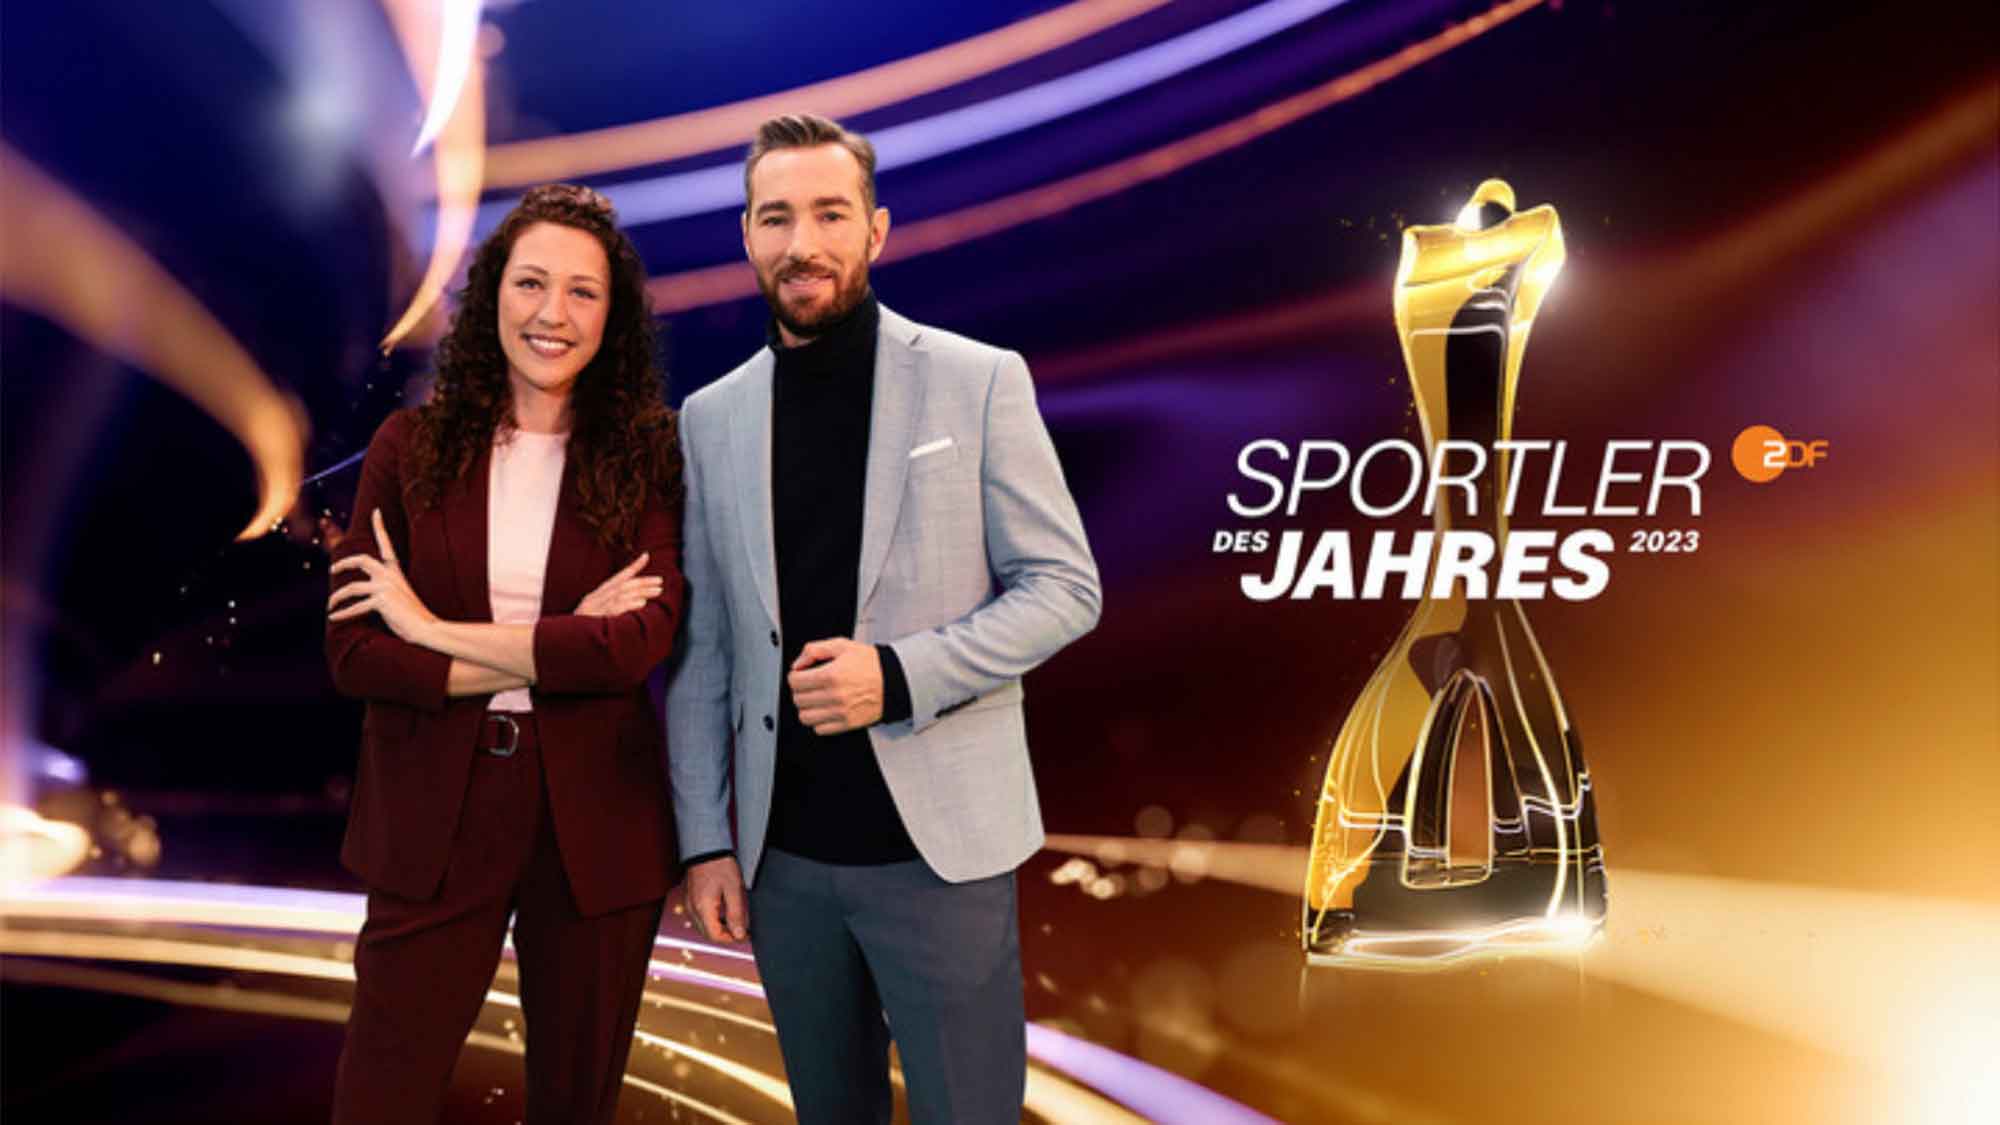 »Sportler des Jahres« im ZDF mit neuem Moderations Duo